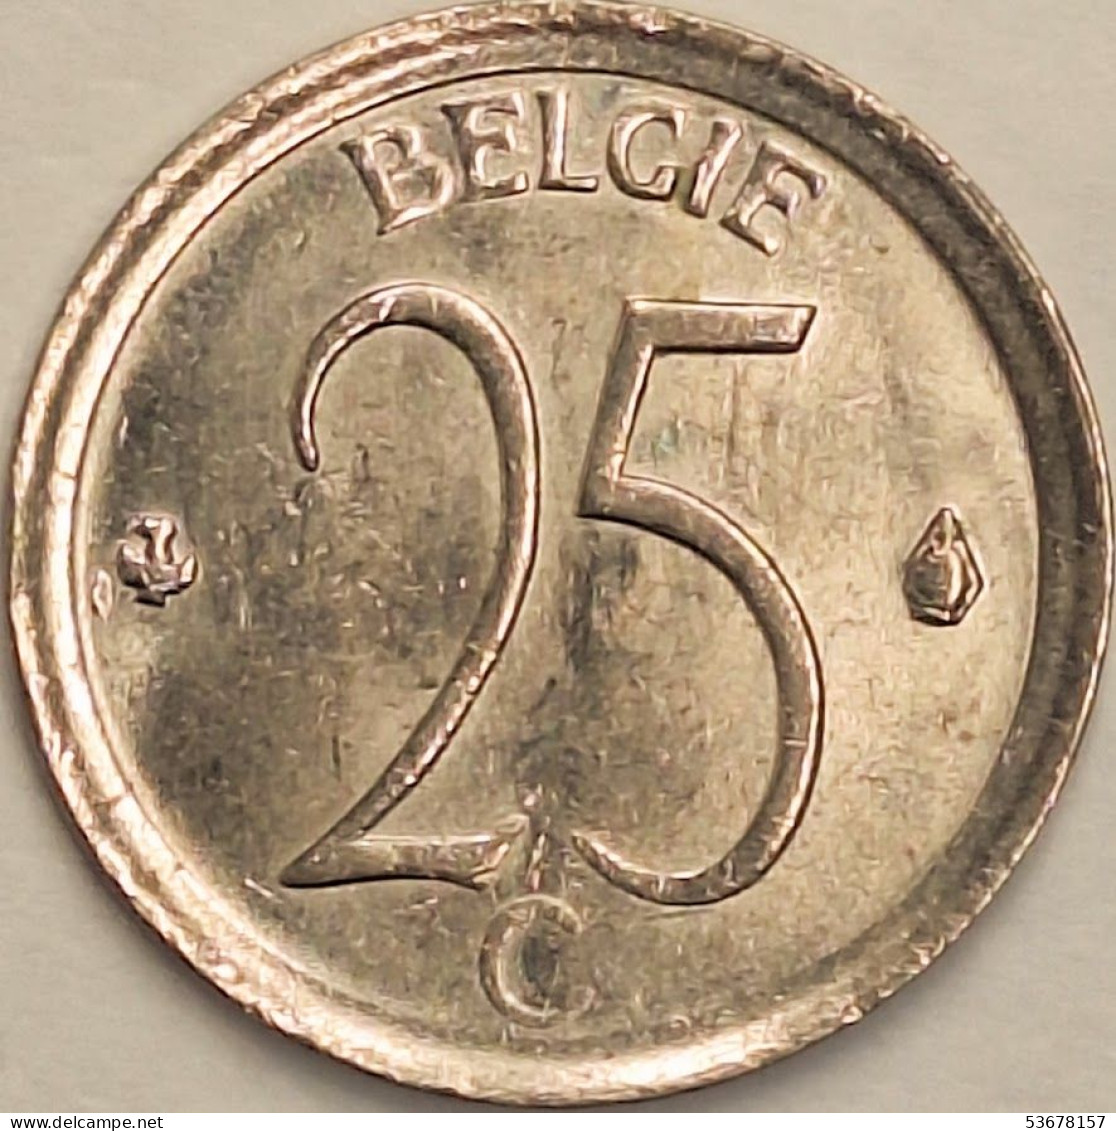 Belgium - 25 Centimes 1964, KM# 154.1 (#3082) - 25 Cent